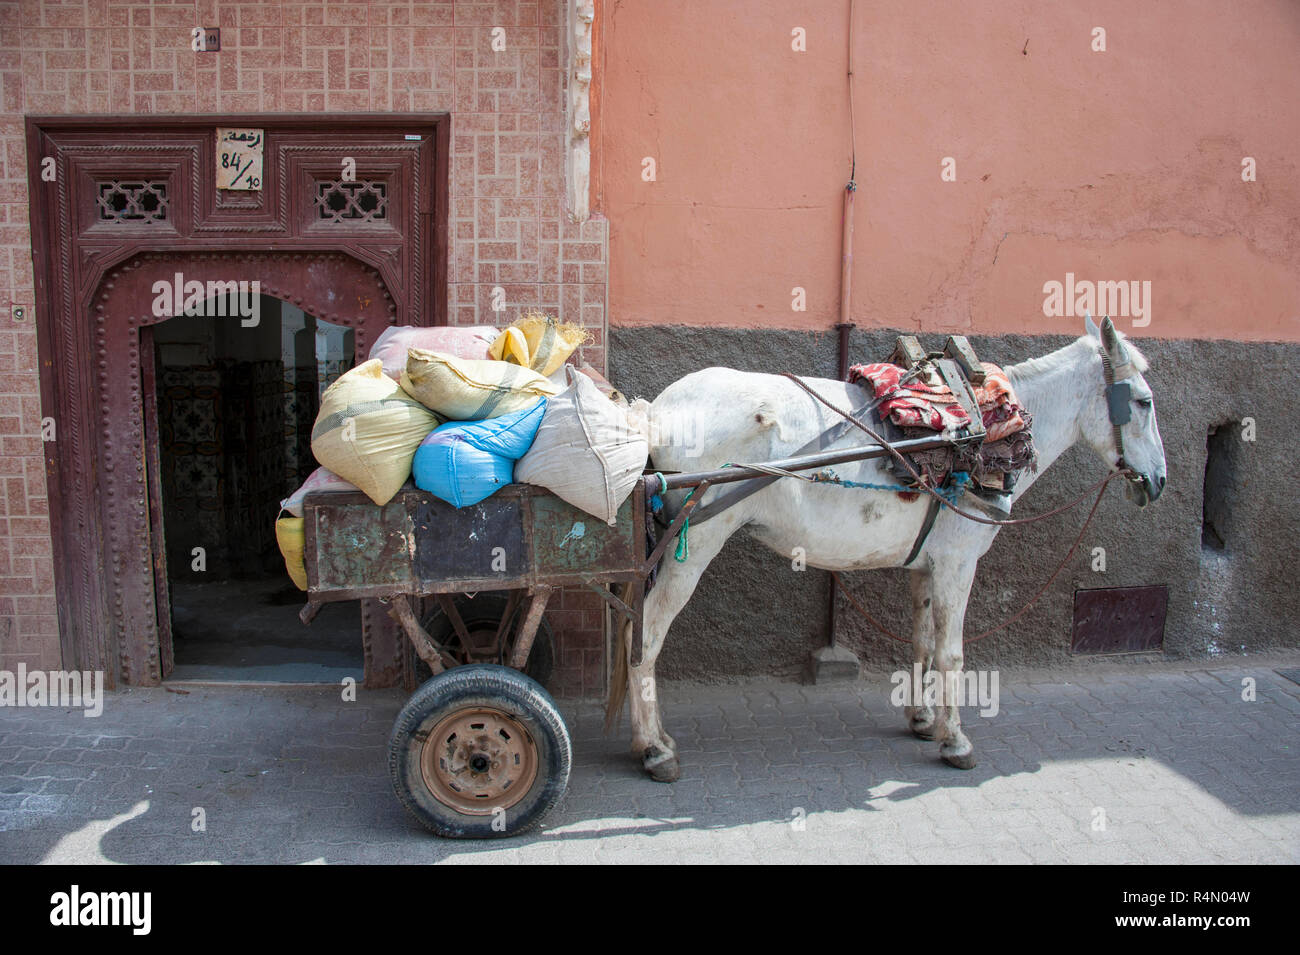 18-04-11. Marrakesch, Marokko. Ein Esel Ankuppeln eines Anhängers, verwendete Baumaterialien in der Medina, wo die Straßen zu eng für v sind zu schleppen Stockfoto